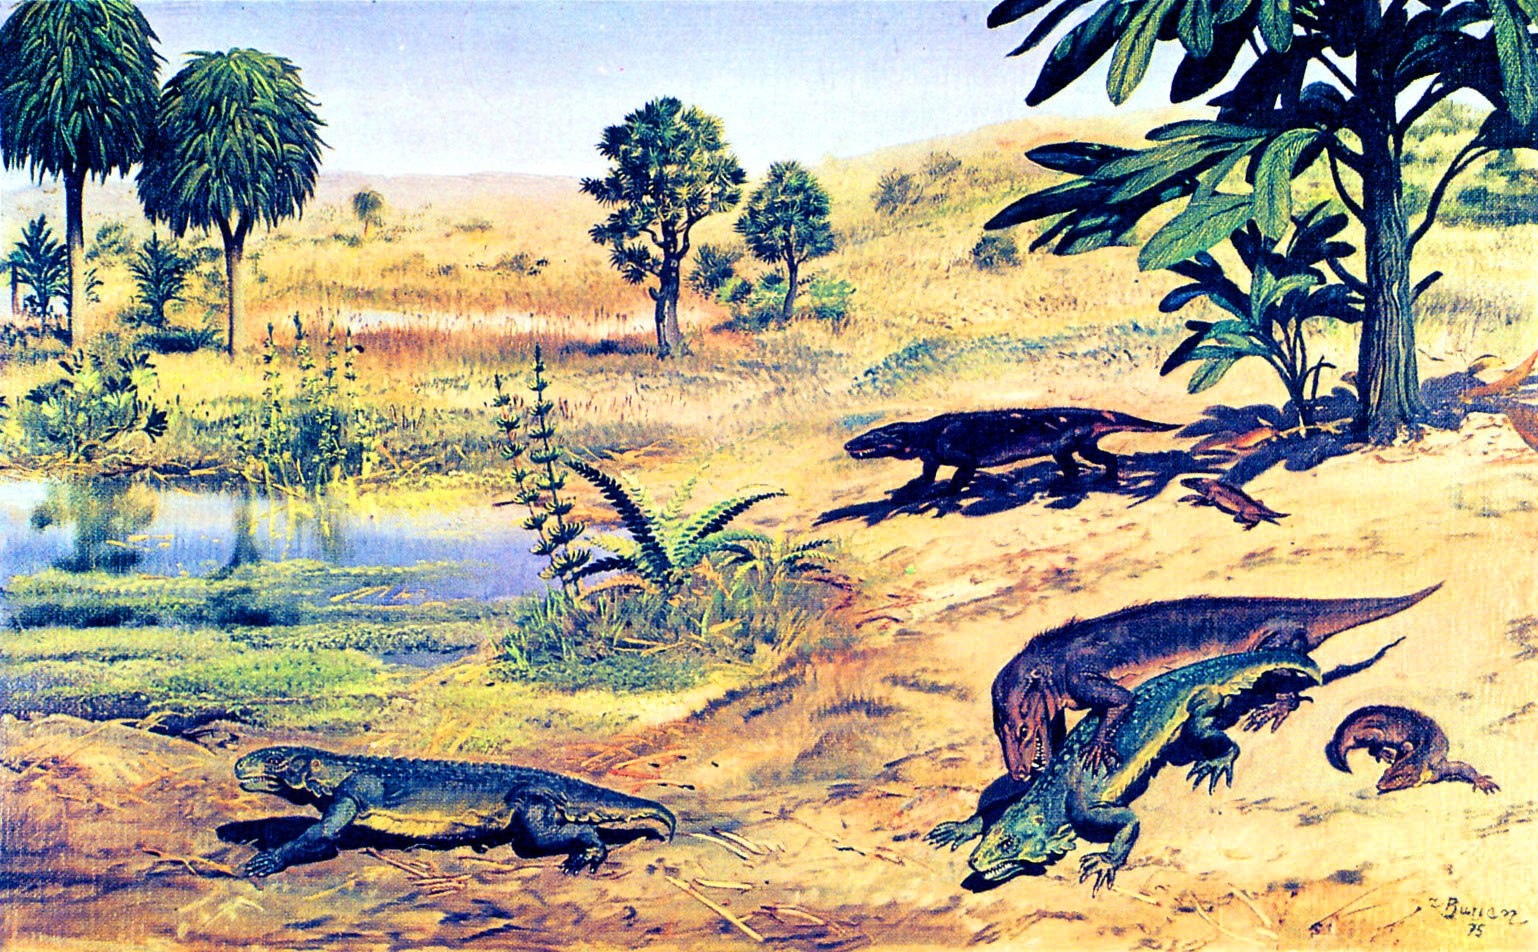 Мезозойский триас. Зденек Буриан динозавры. Зденек Буриан Триас. Динозавры Триасового периода. Триасовый период мезозойской эры.